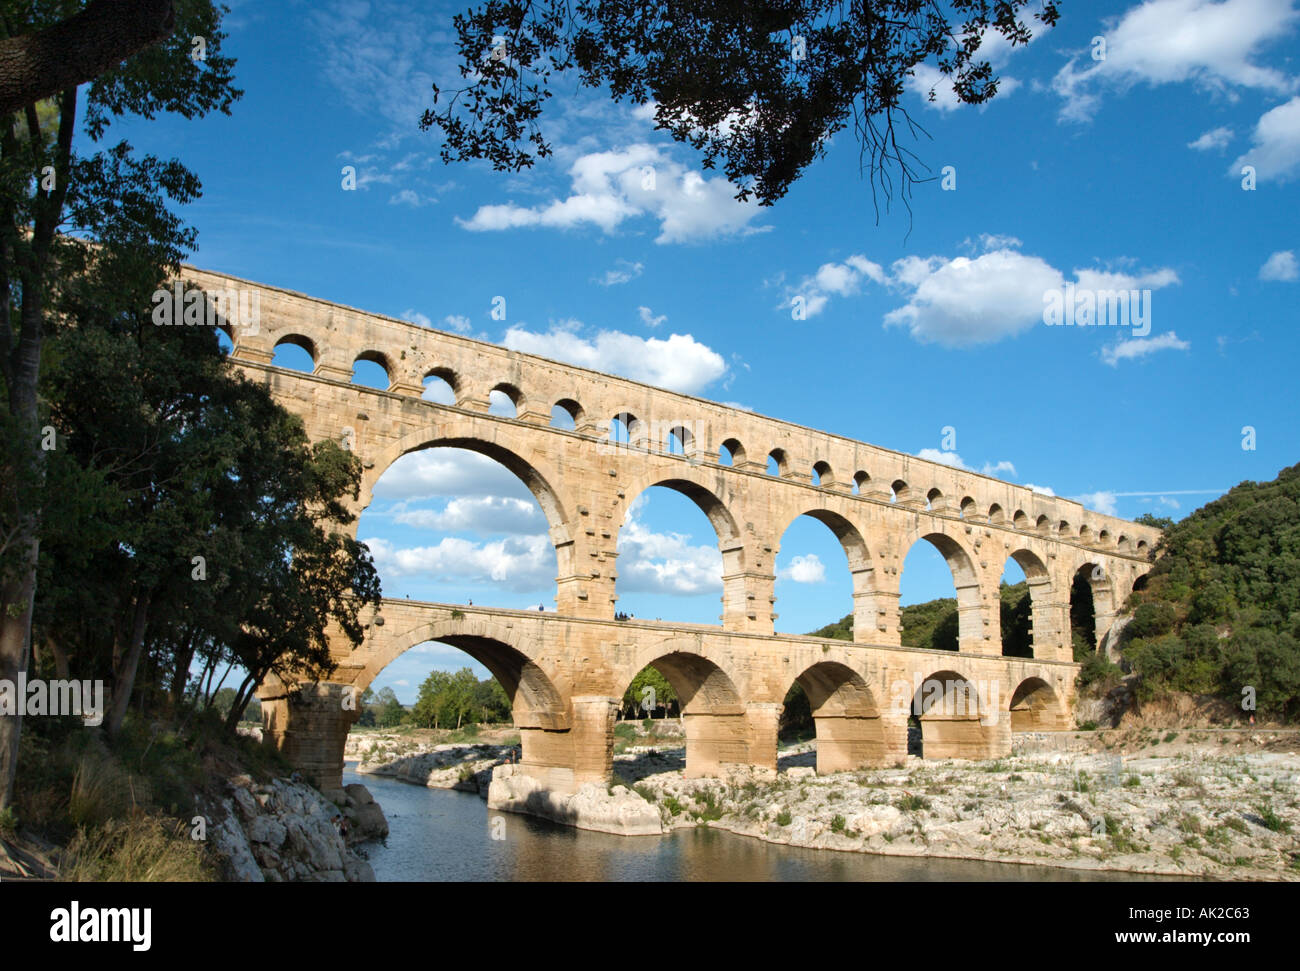 Pont du Gard aqueduc romain sur la rivière Gard, Languedoc, France Banque D'Images